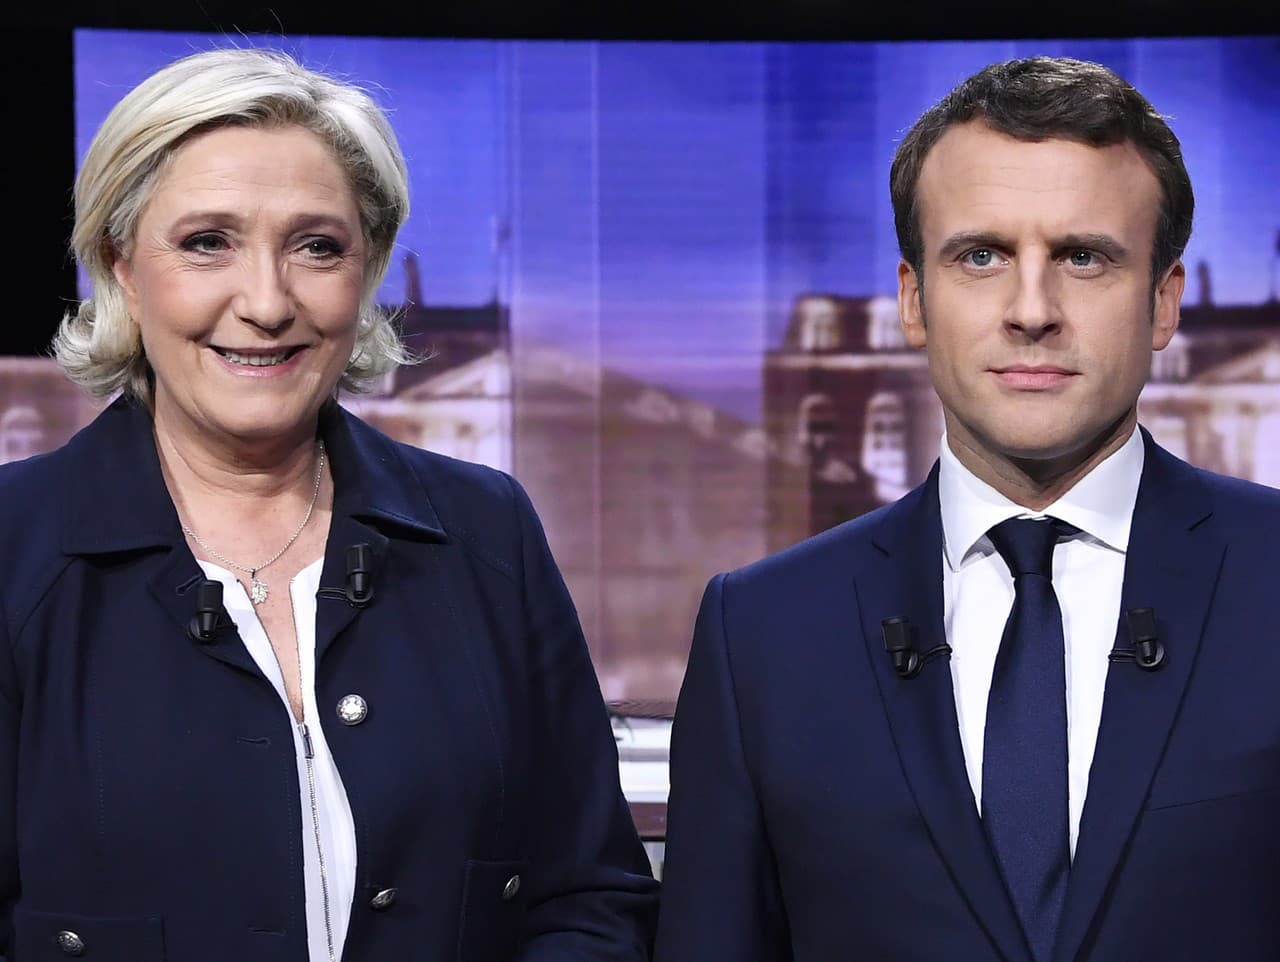 Marine Le Penová a Emmanuel Macron